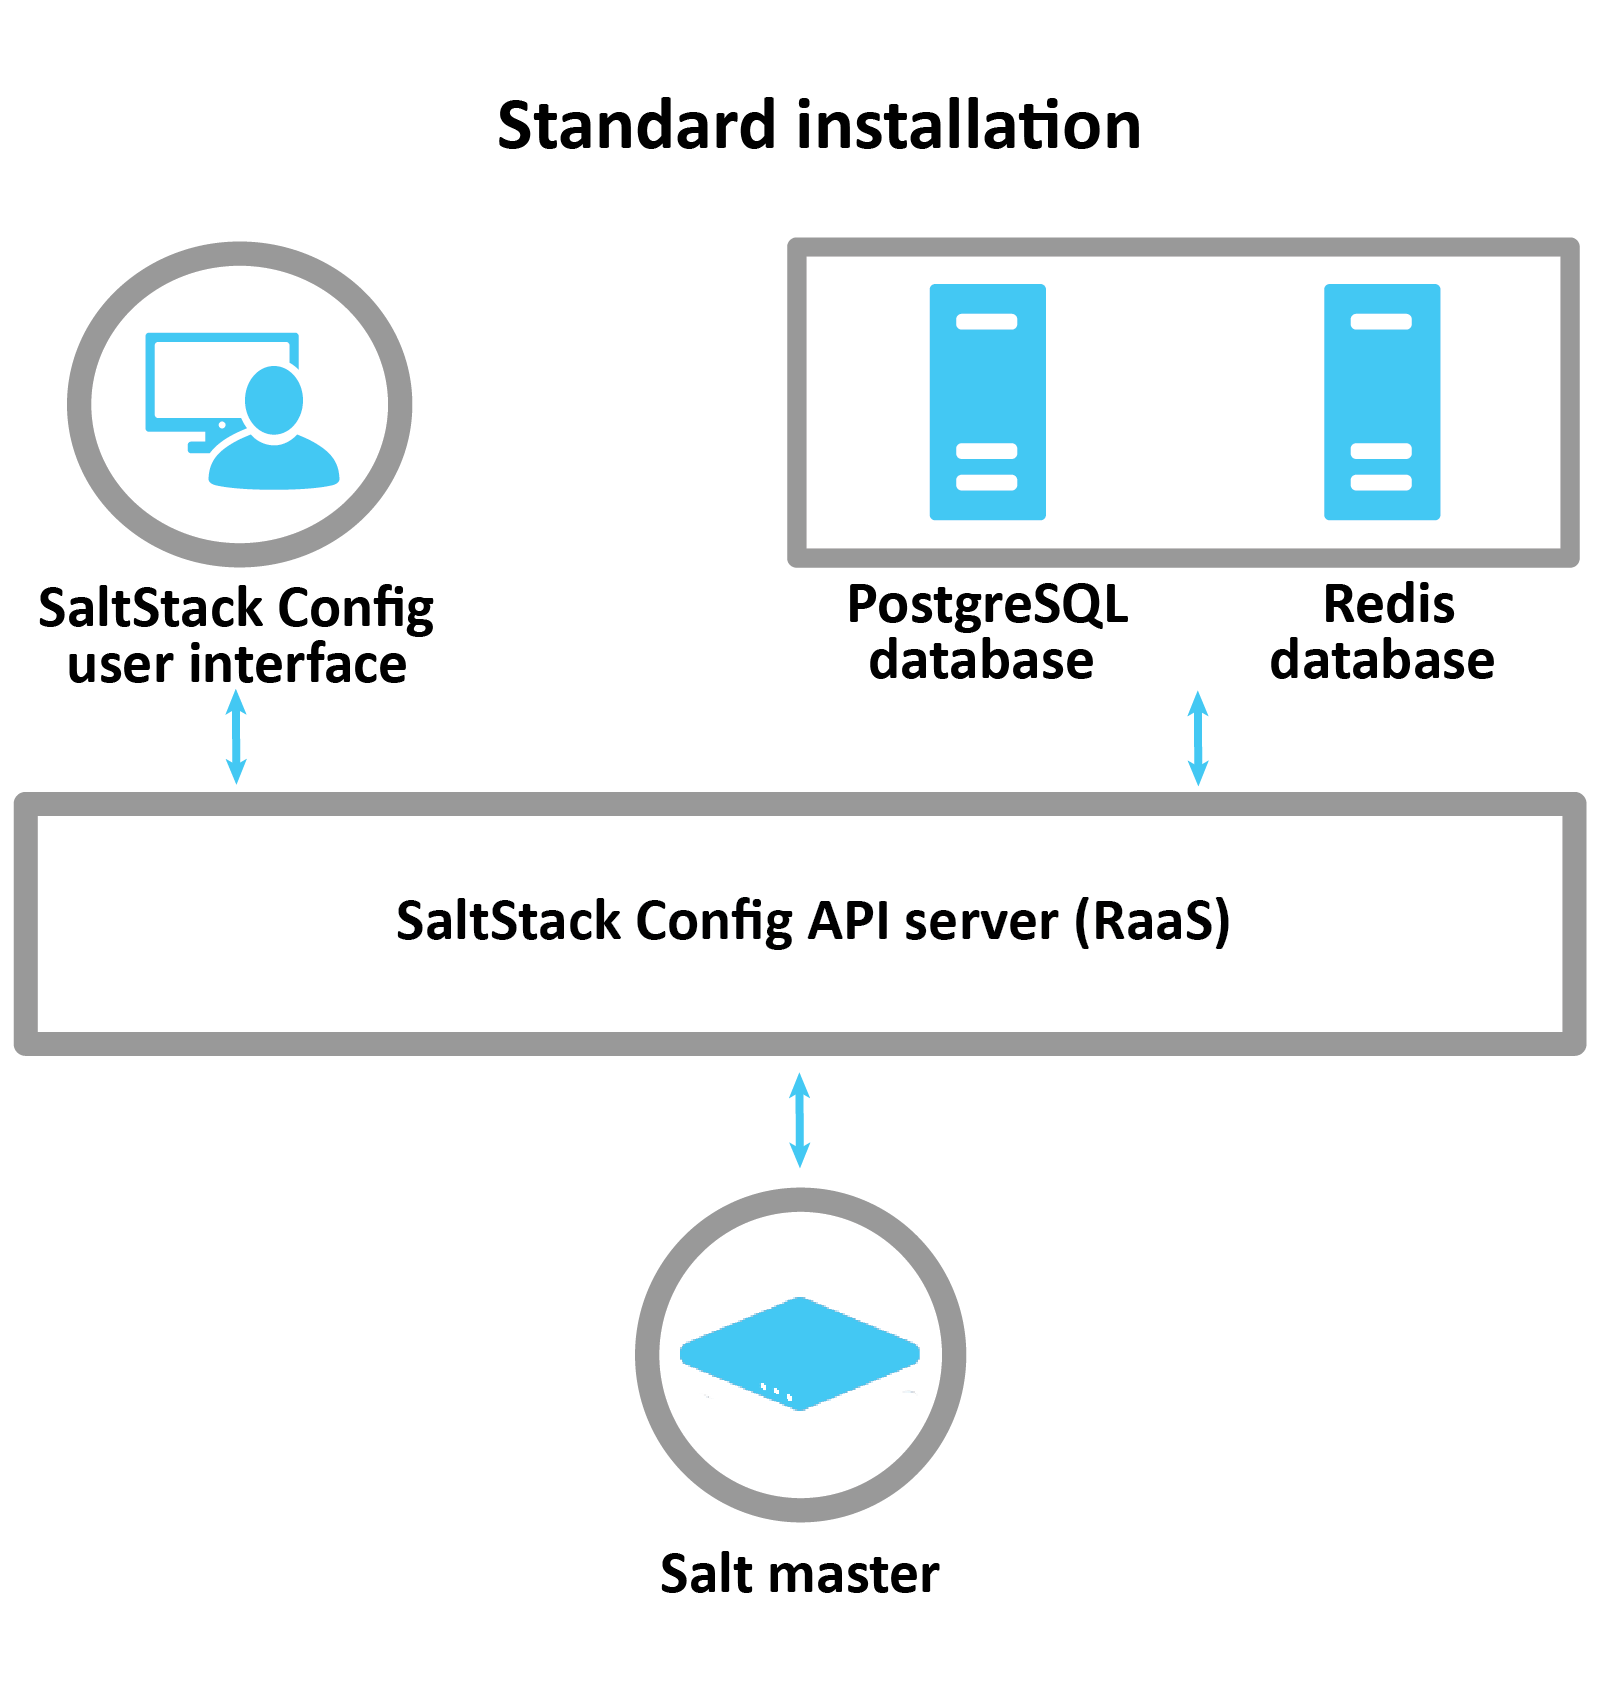 Diagrama que explica cómo funciona una instalación estándar de SaltStack: vRA, Postgres y Redis se conectan al servidor RaaS, que controla el maestro de Salt.